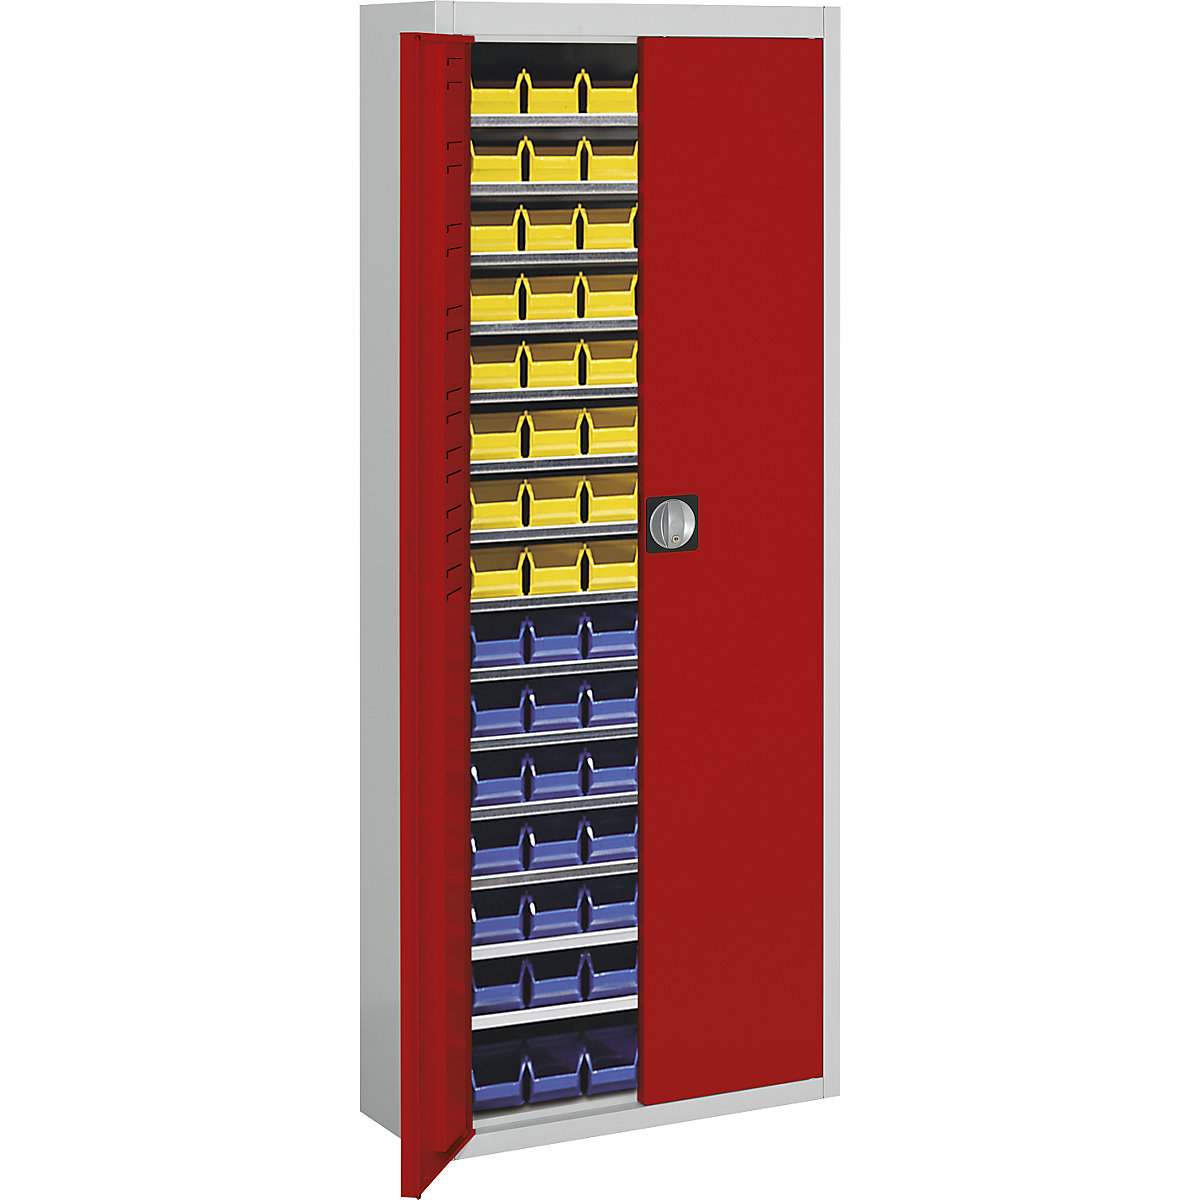 Magazinschrank mit Sichtlagerkästen mauser, HxBxT 1740 x 680 x 280 mm, zweifarbig, Korpus grau, Türen rot, 90 Kästen-11